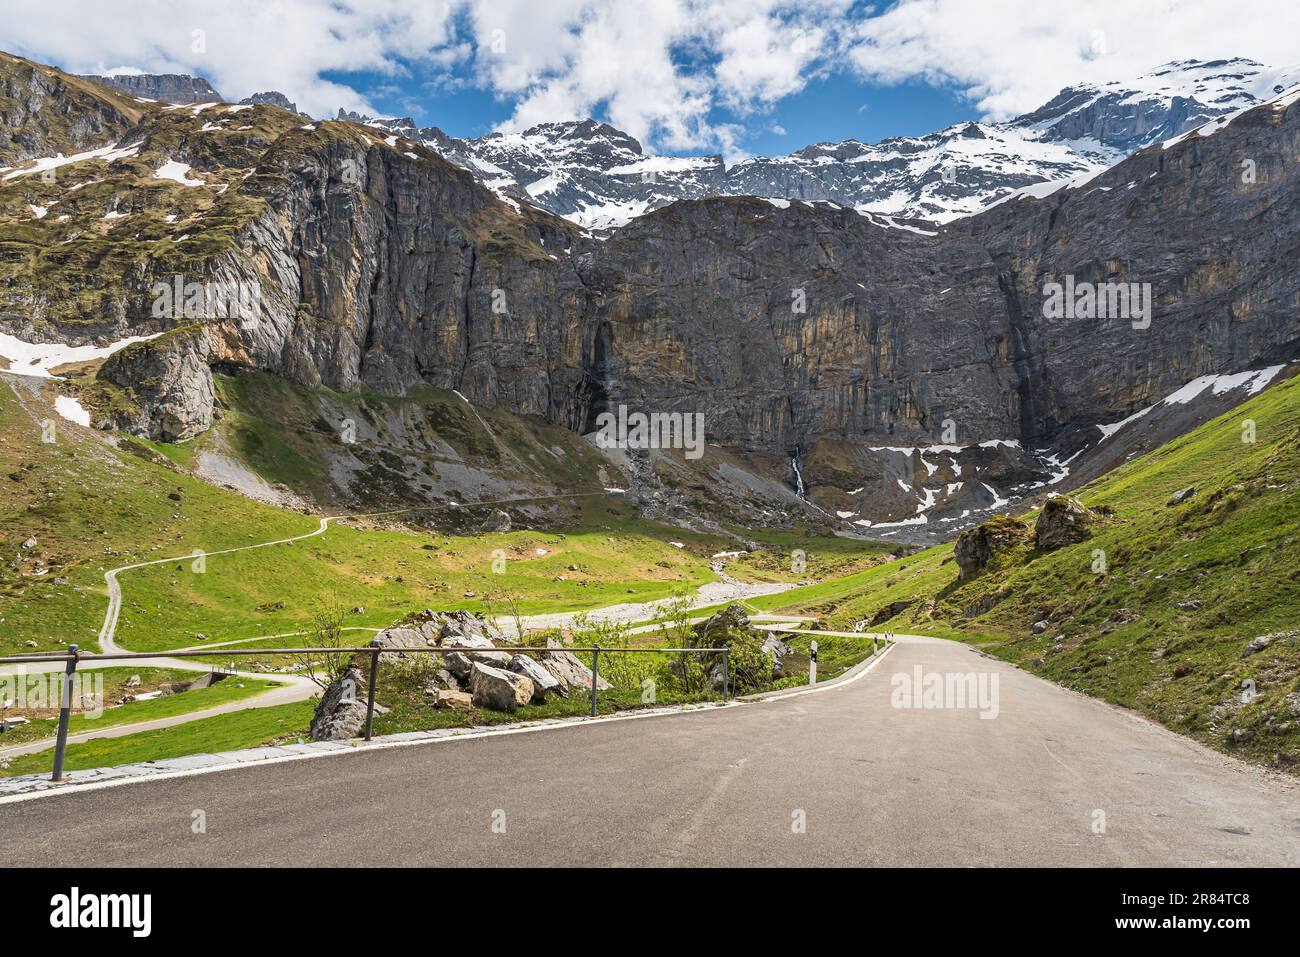 Rochers escarpés sur la route de montagne de Klausenpass reliant les cantons d'Uri et de Glaris dans les Alpes suisses, Spiringen, canton d'Uri, Suisse Banque D'Images